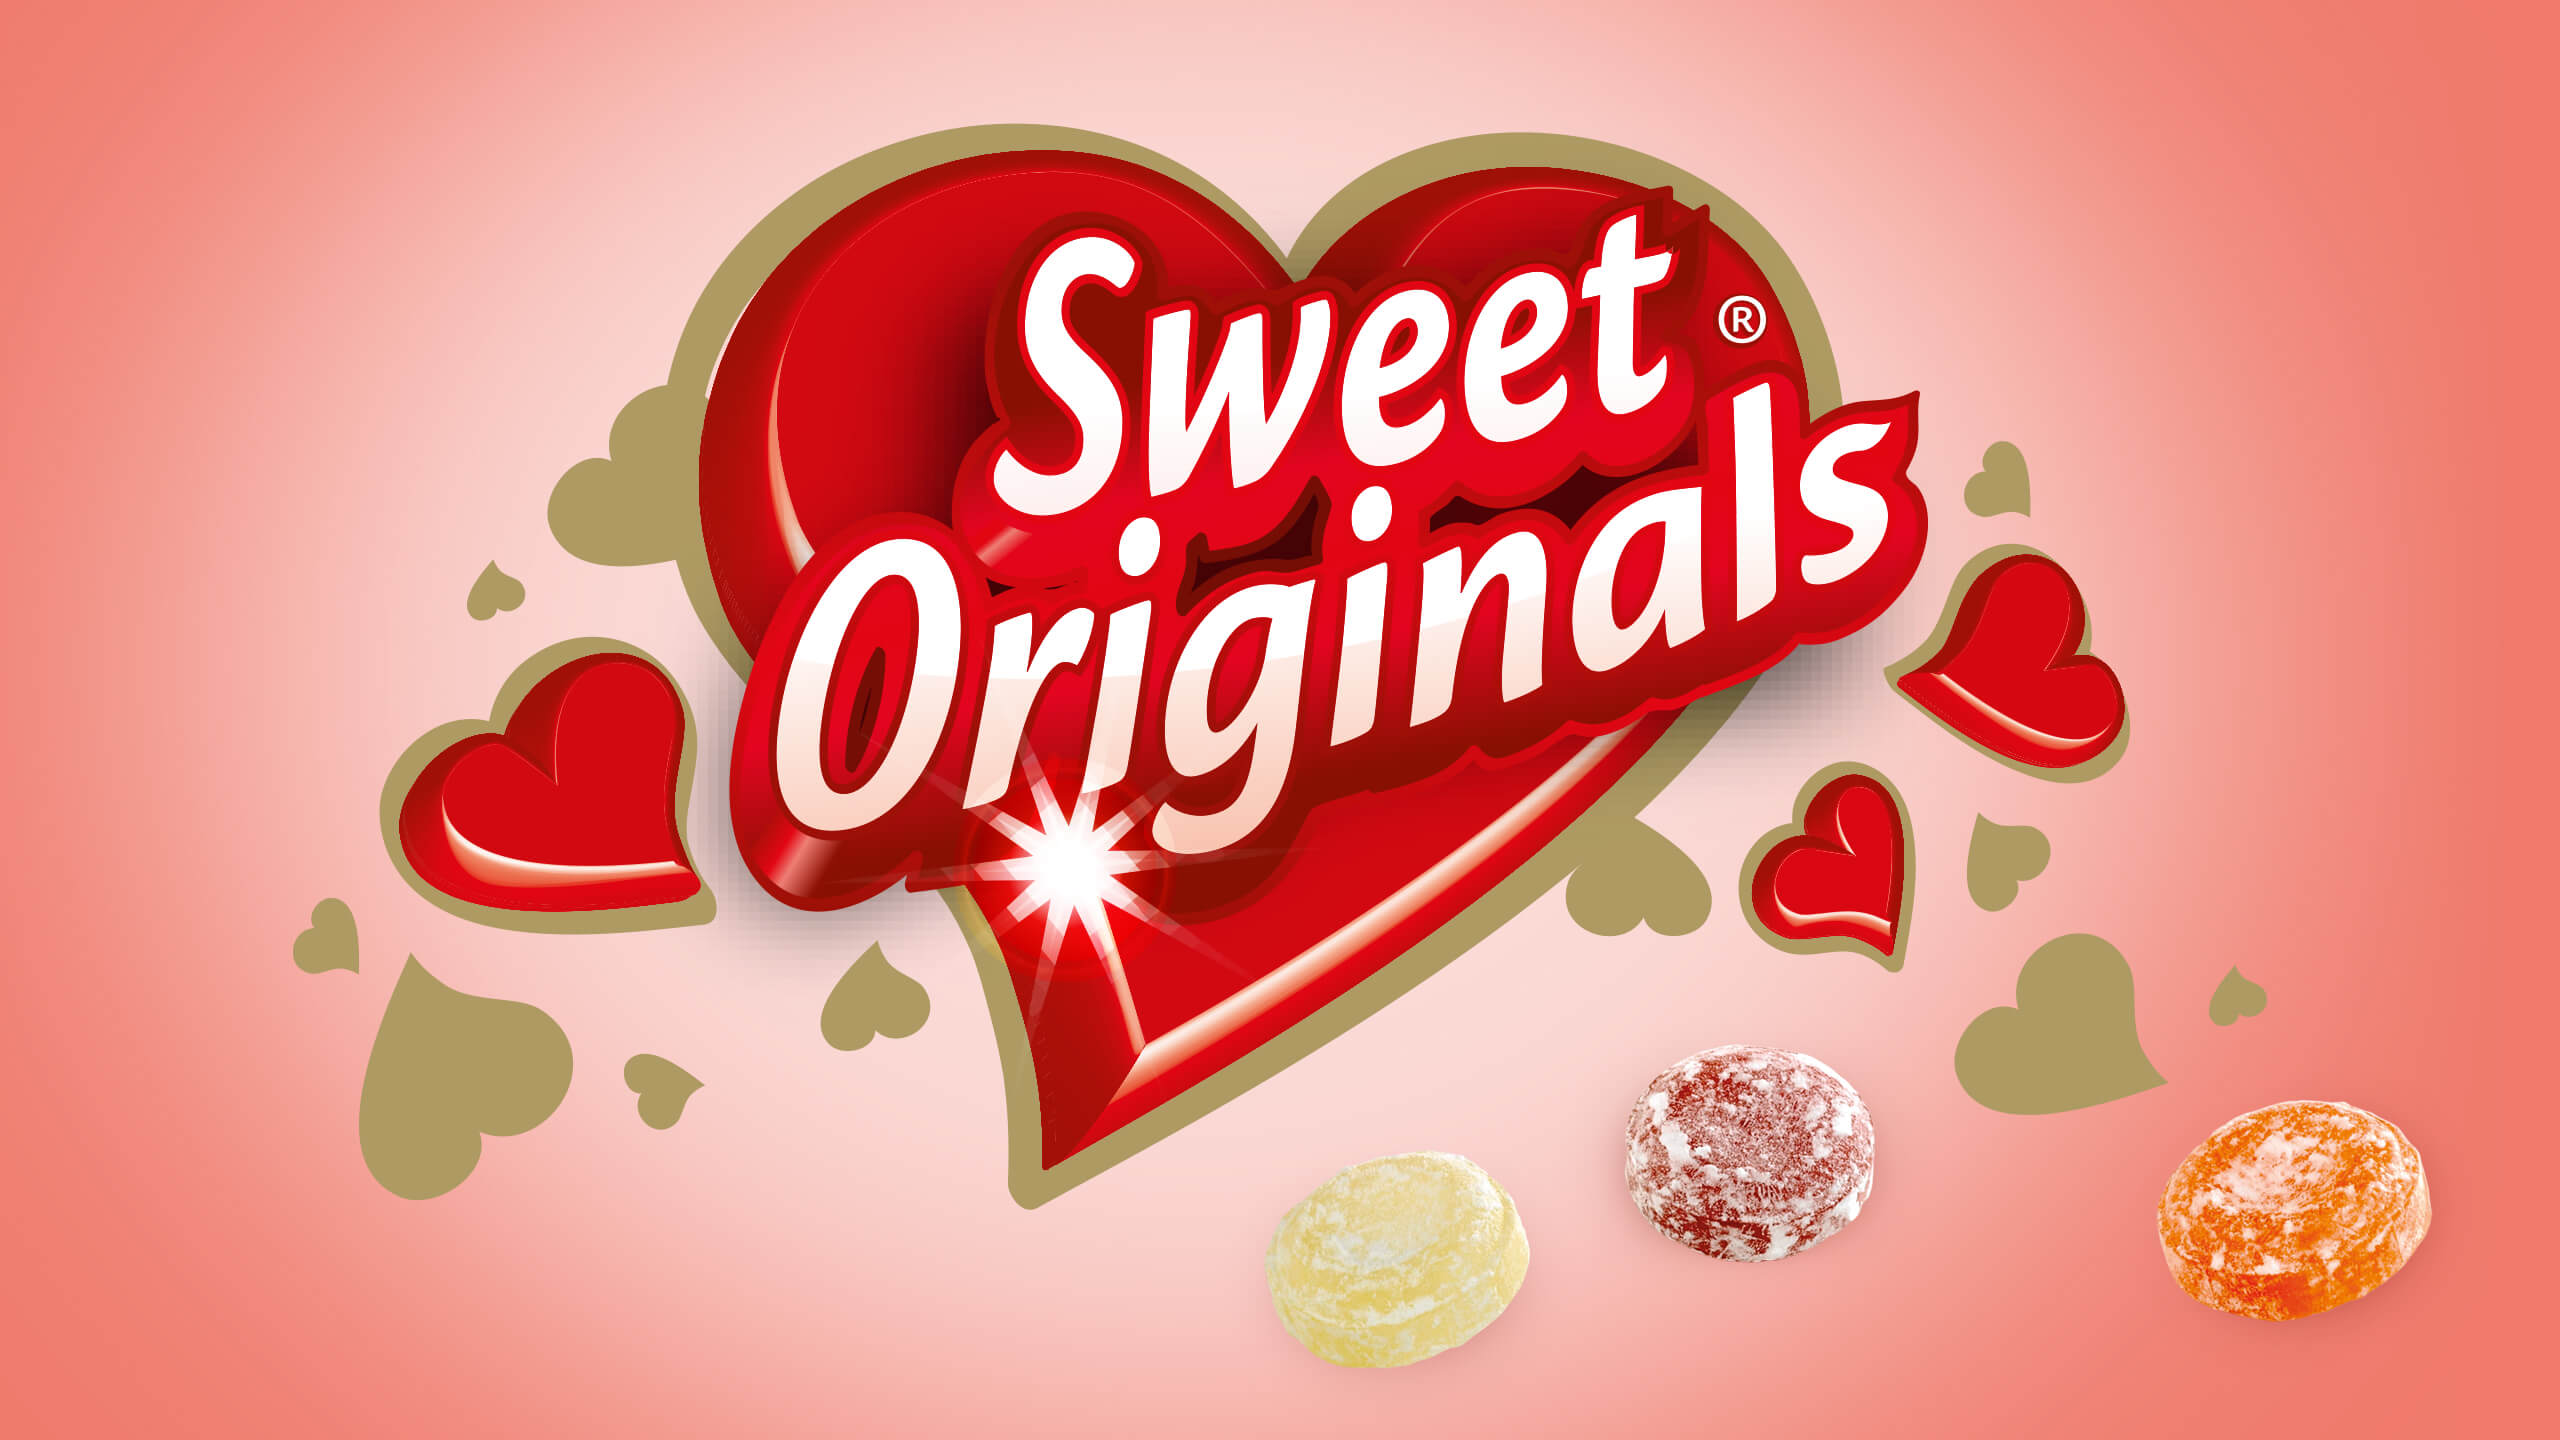 ontwerp merklogo snoep sweet originals